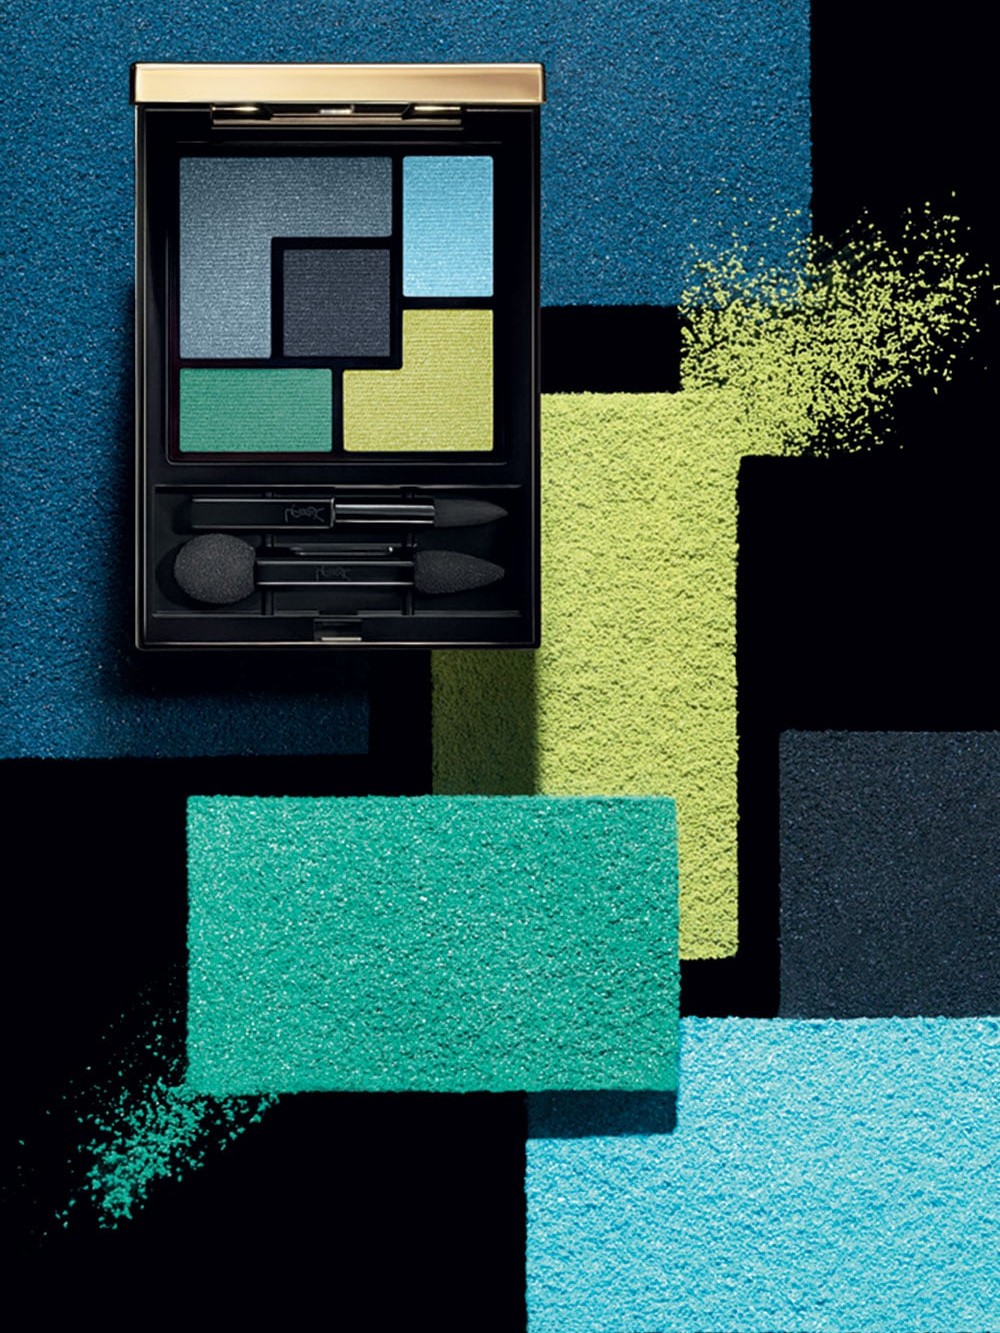 Palette de fards « Couture Palette » par Yves Saint Laurent, 2014 © Luxe en France